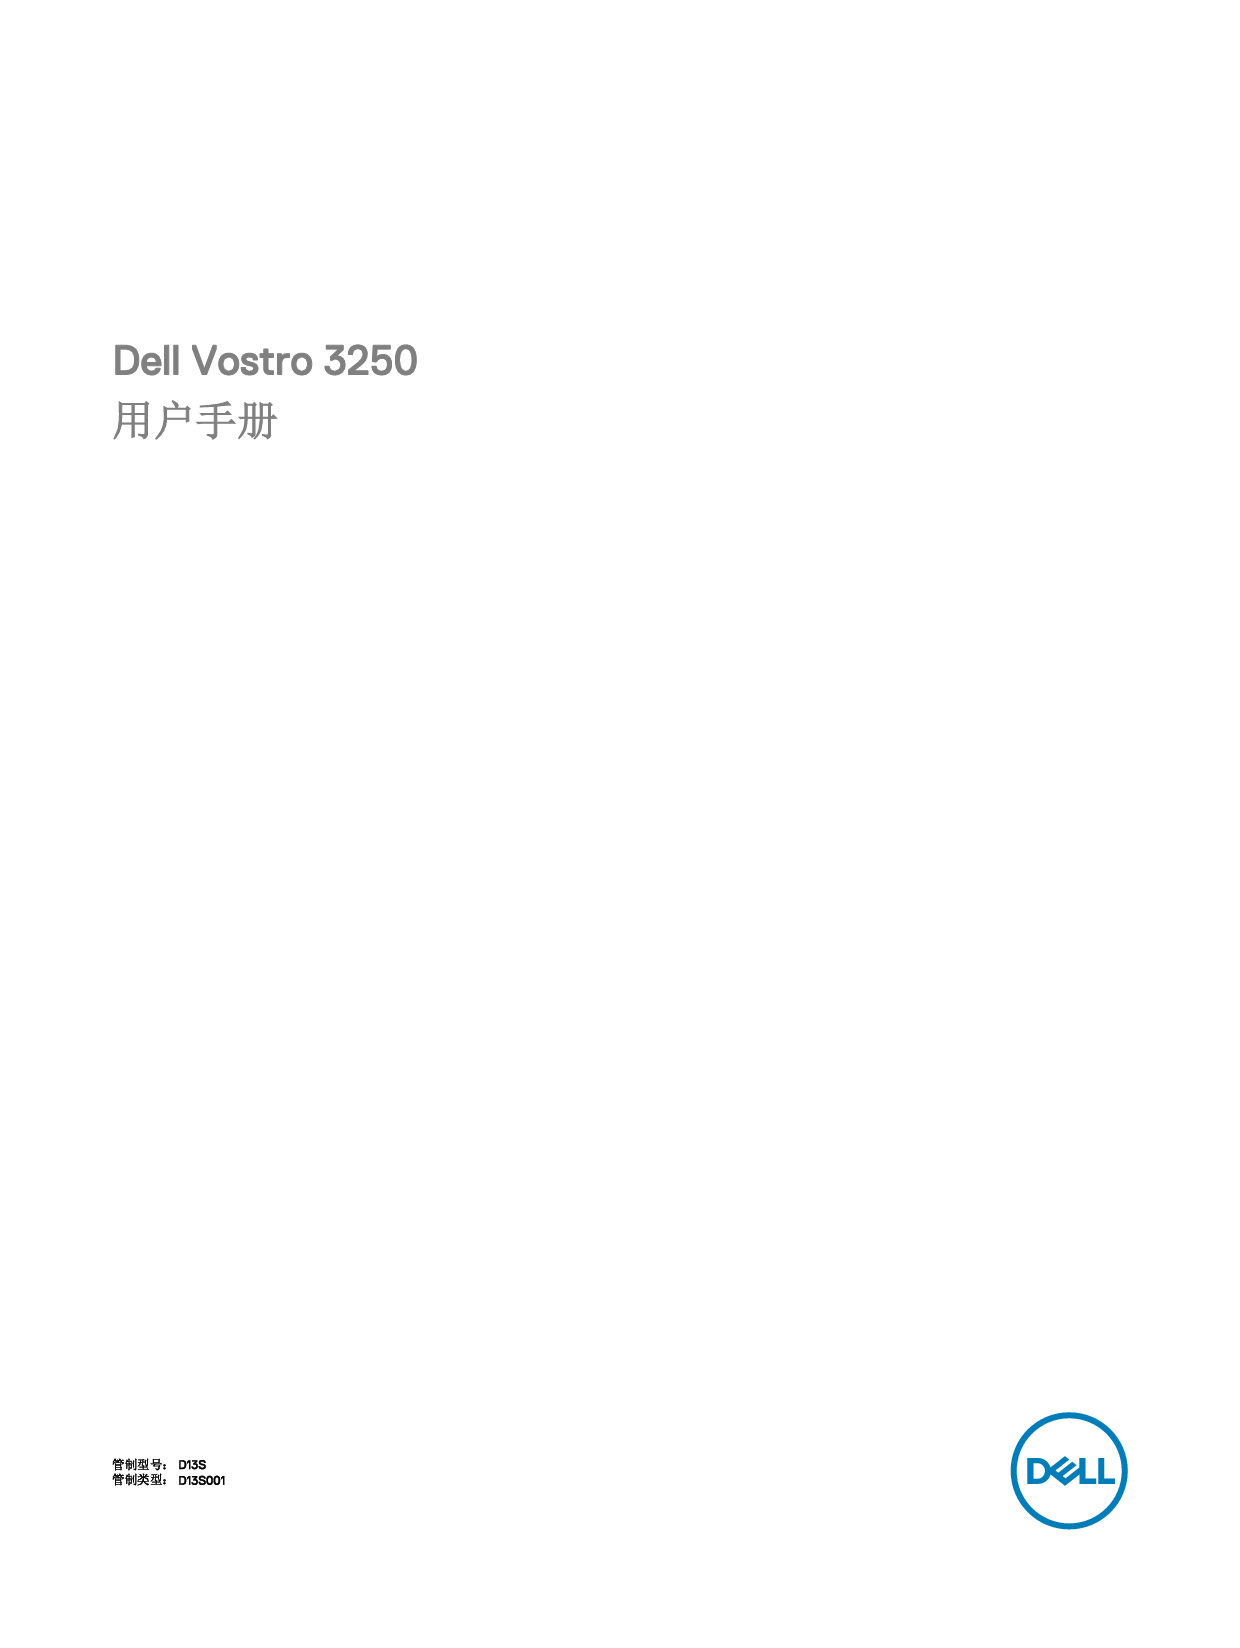 戴尔 Dell Vostro 3250 用户手册 封面